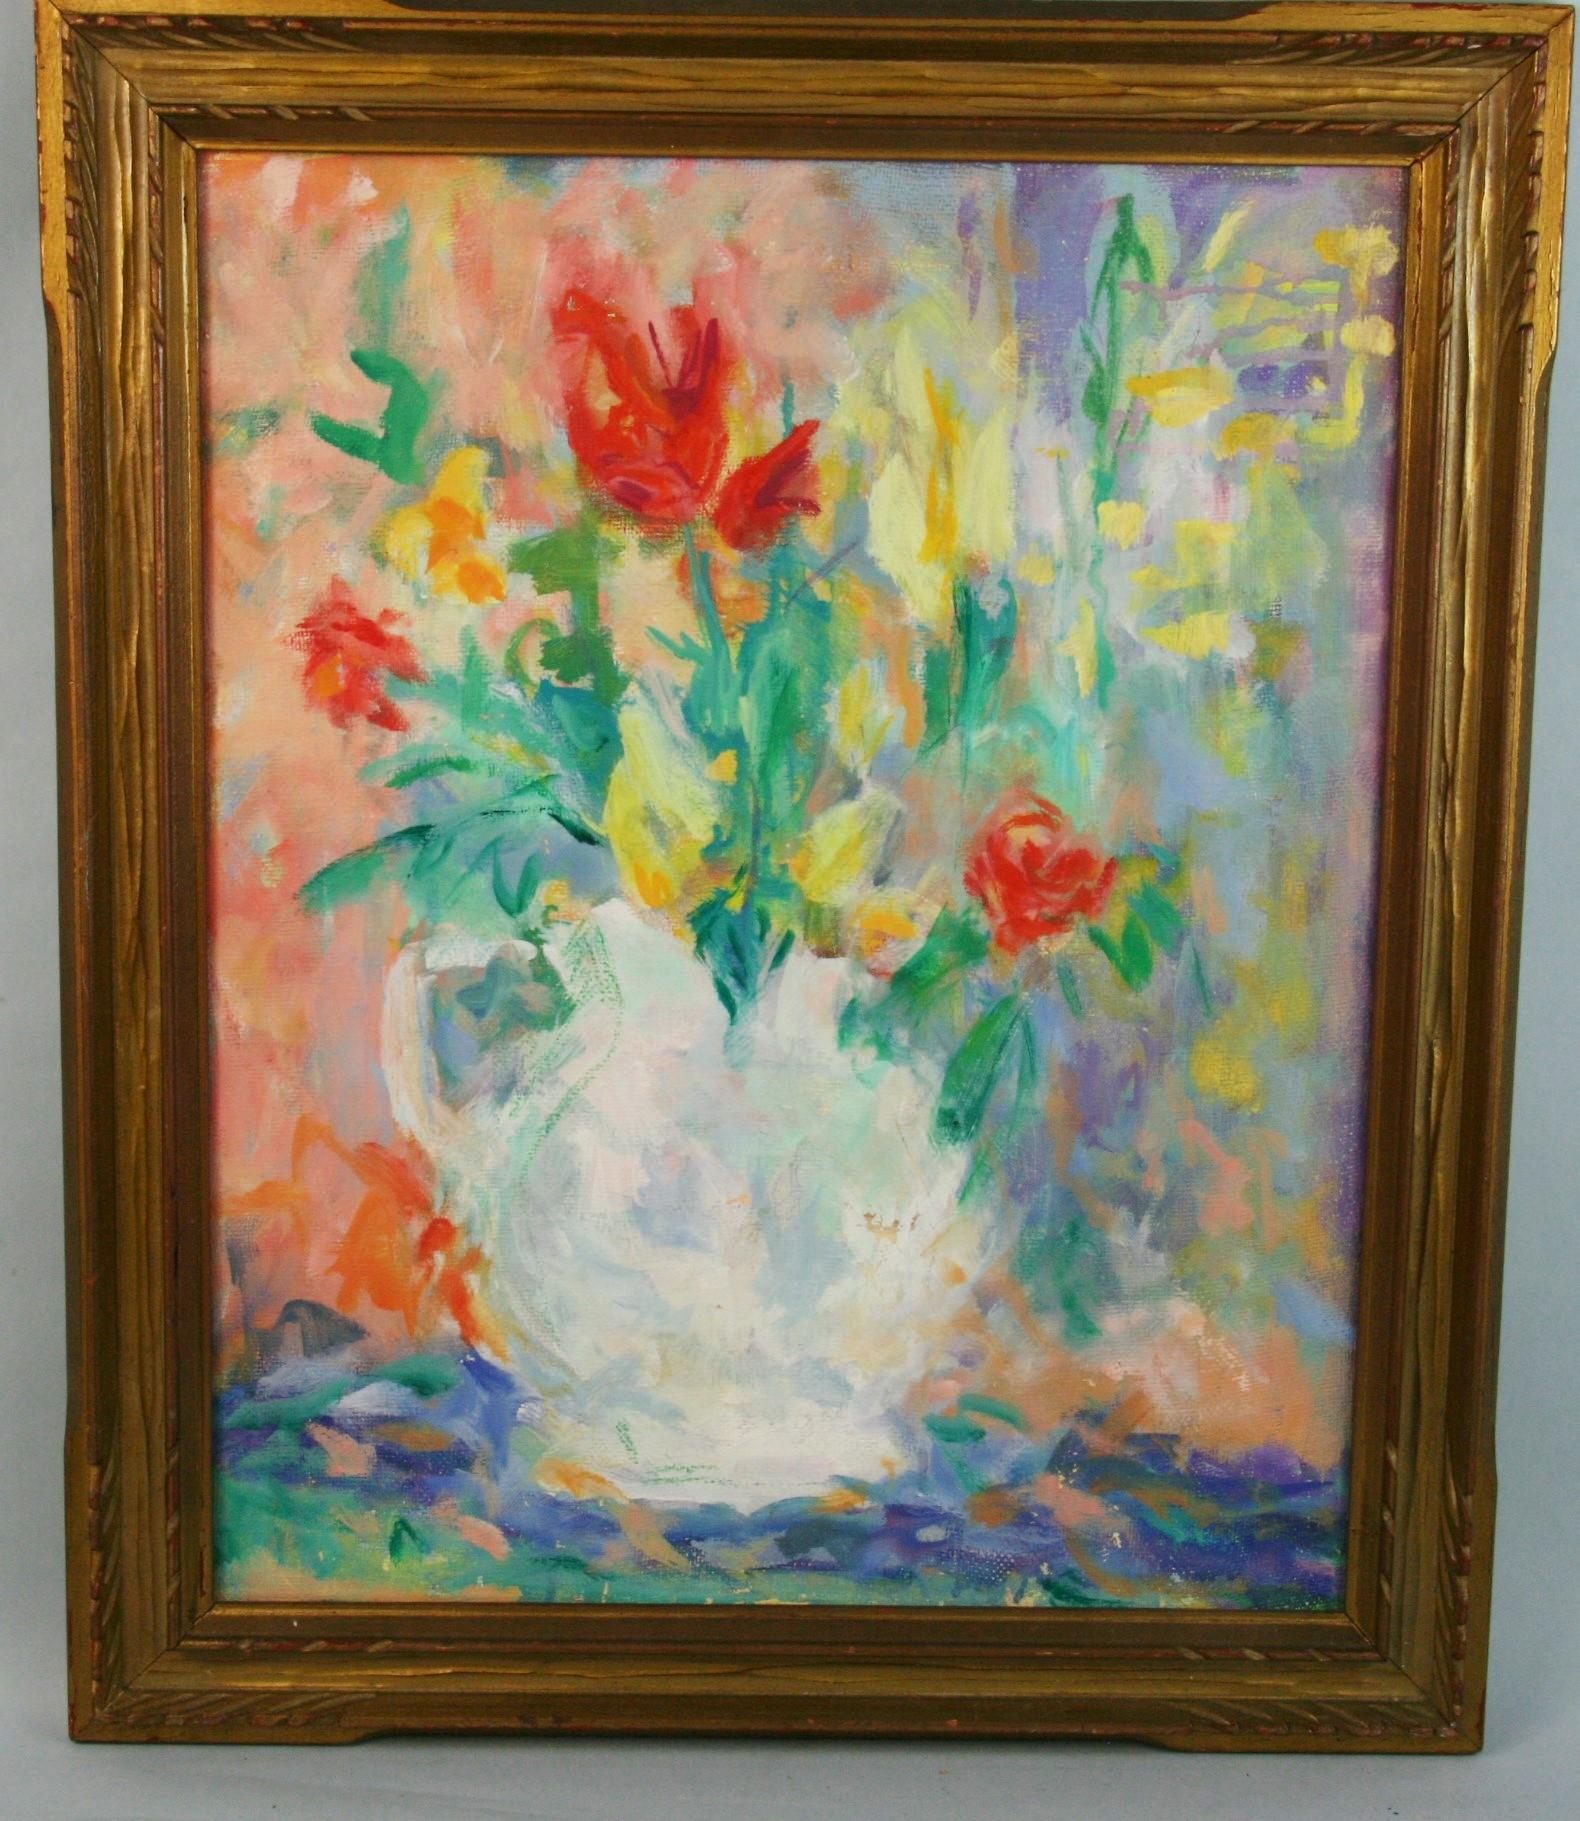 3795 Impressionist vase of flower
Signed on verso Gelant
Set in a carved gilt wood frame
Image size 19.75 x15.75